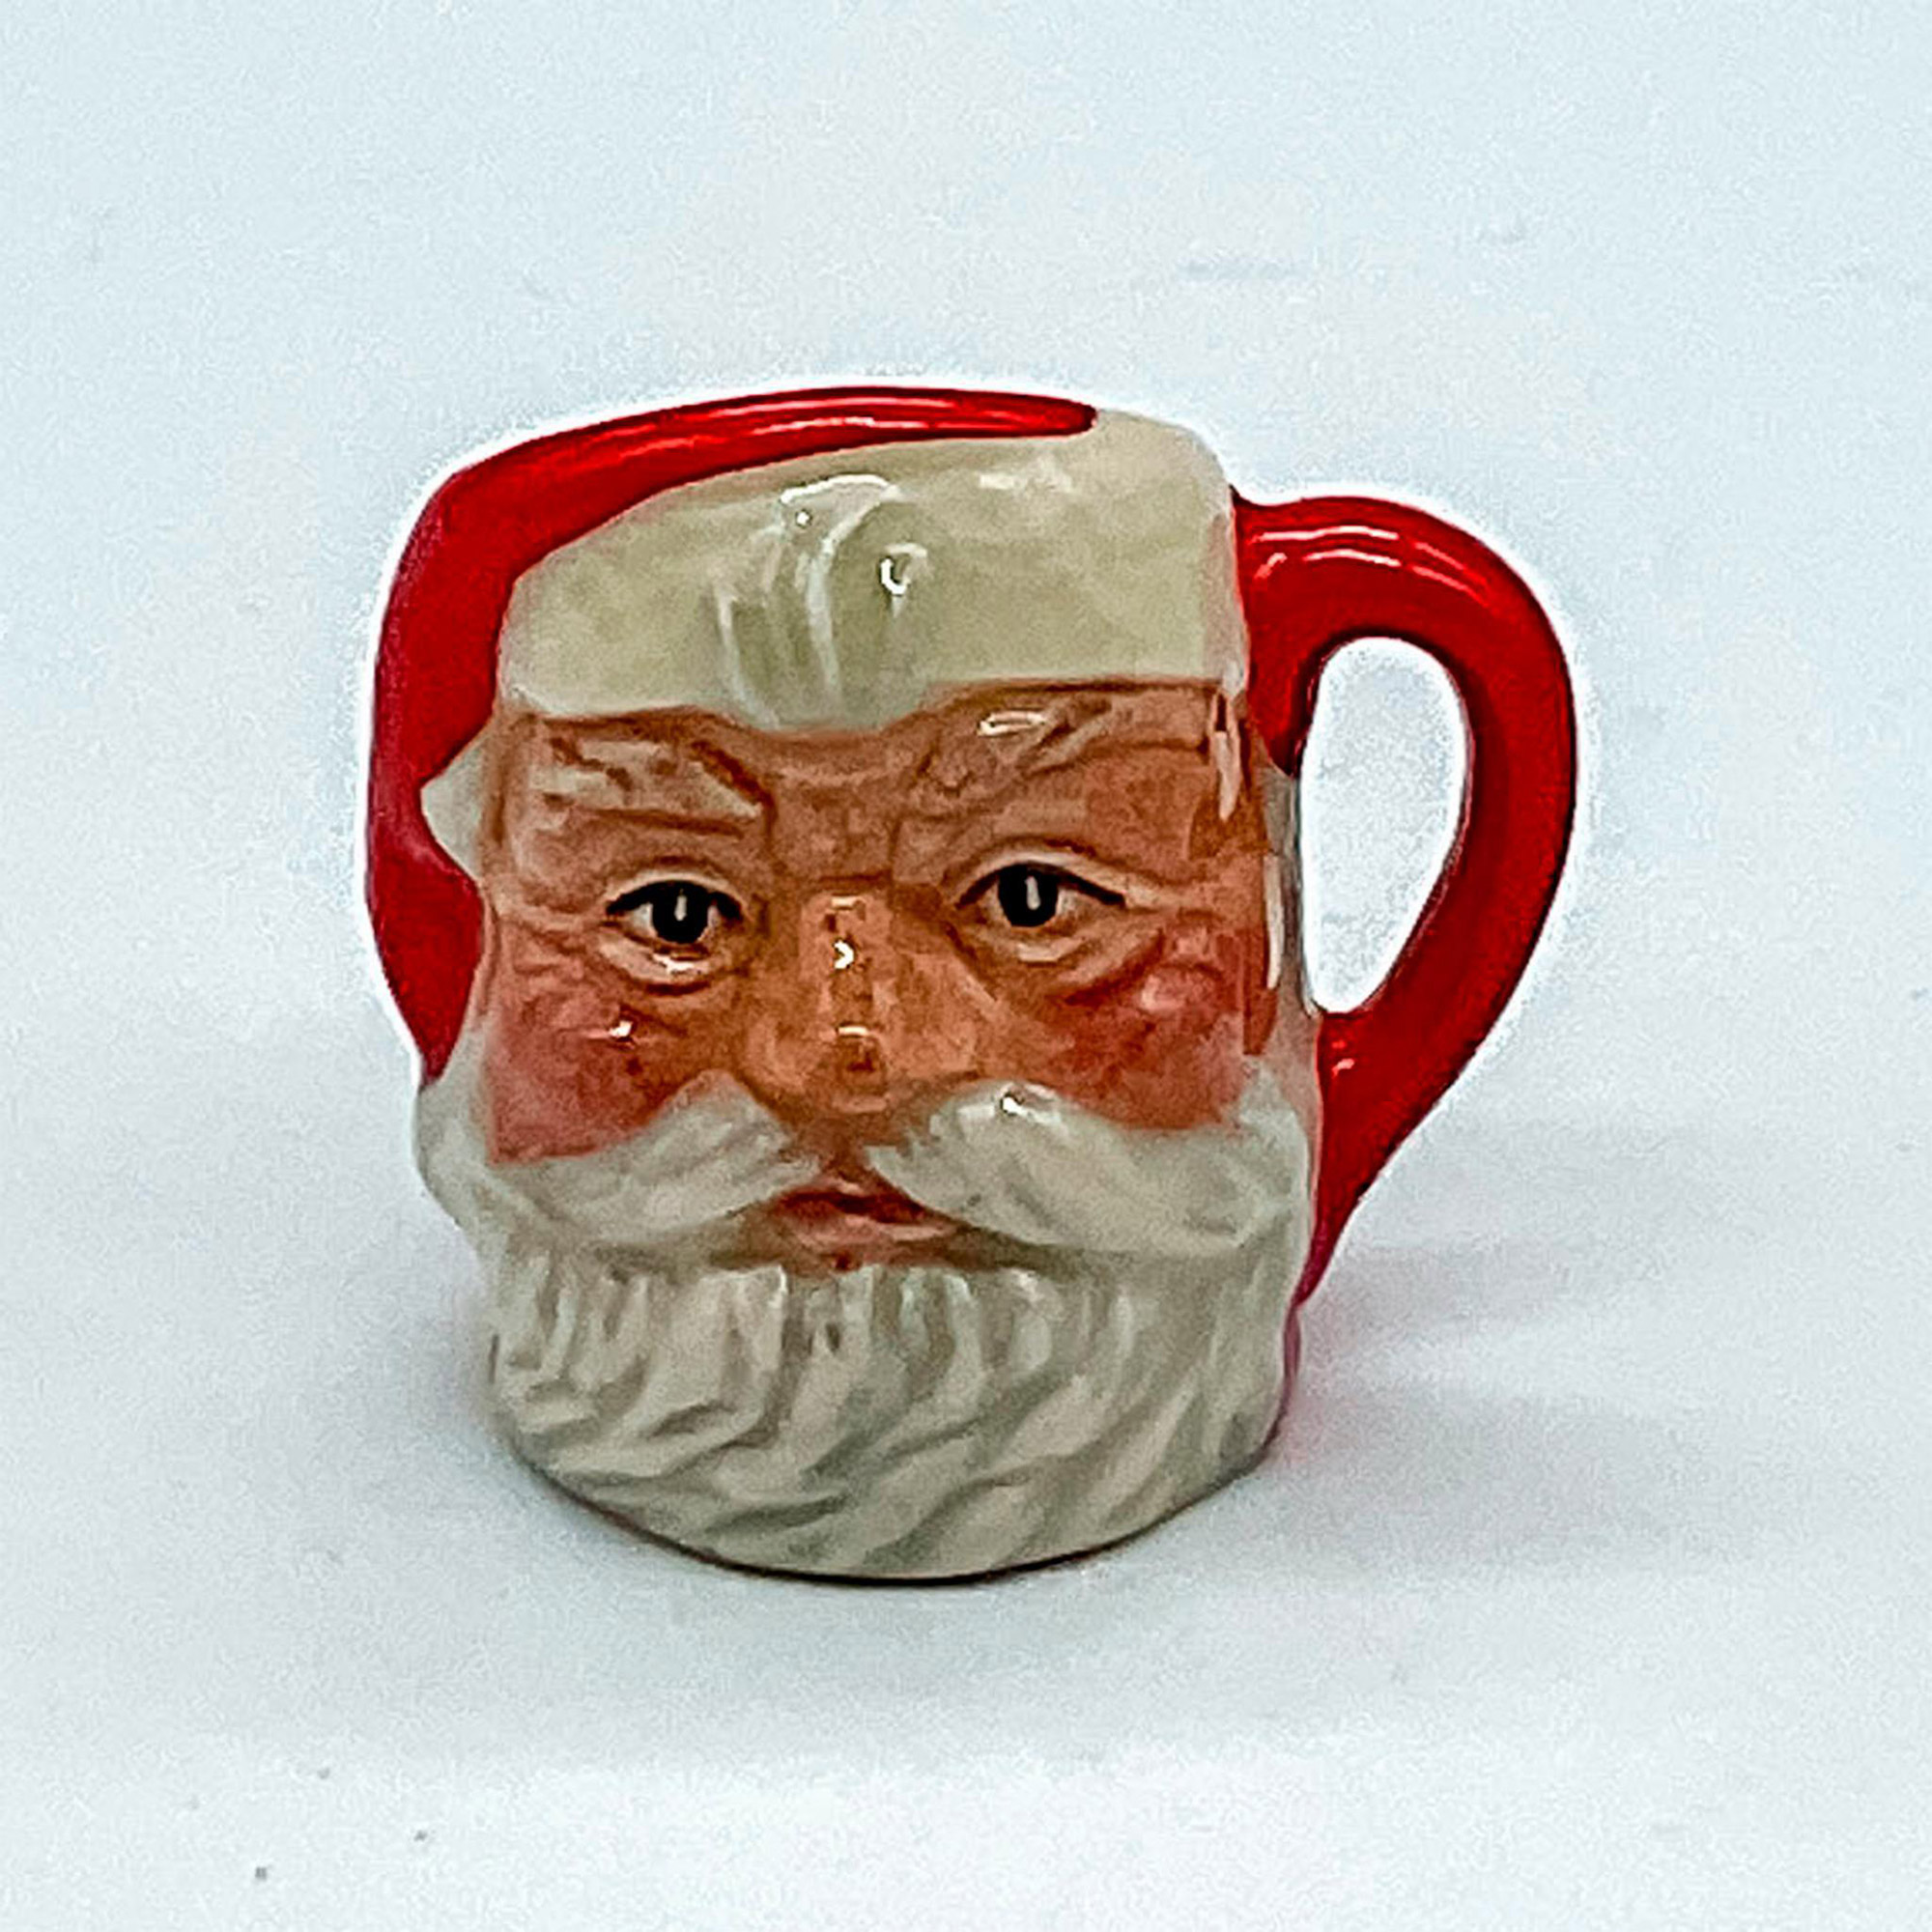 Santa Claus D6950 (Red Handle) - Tiny - Royal Doulton Character Jug